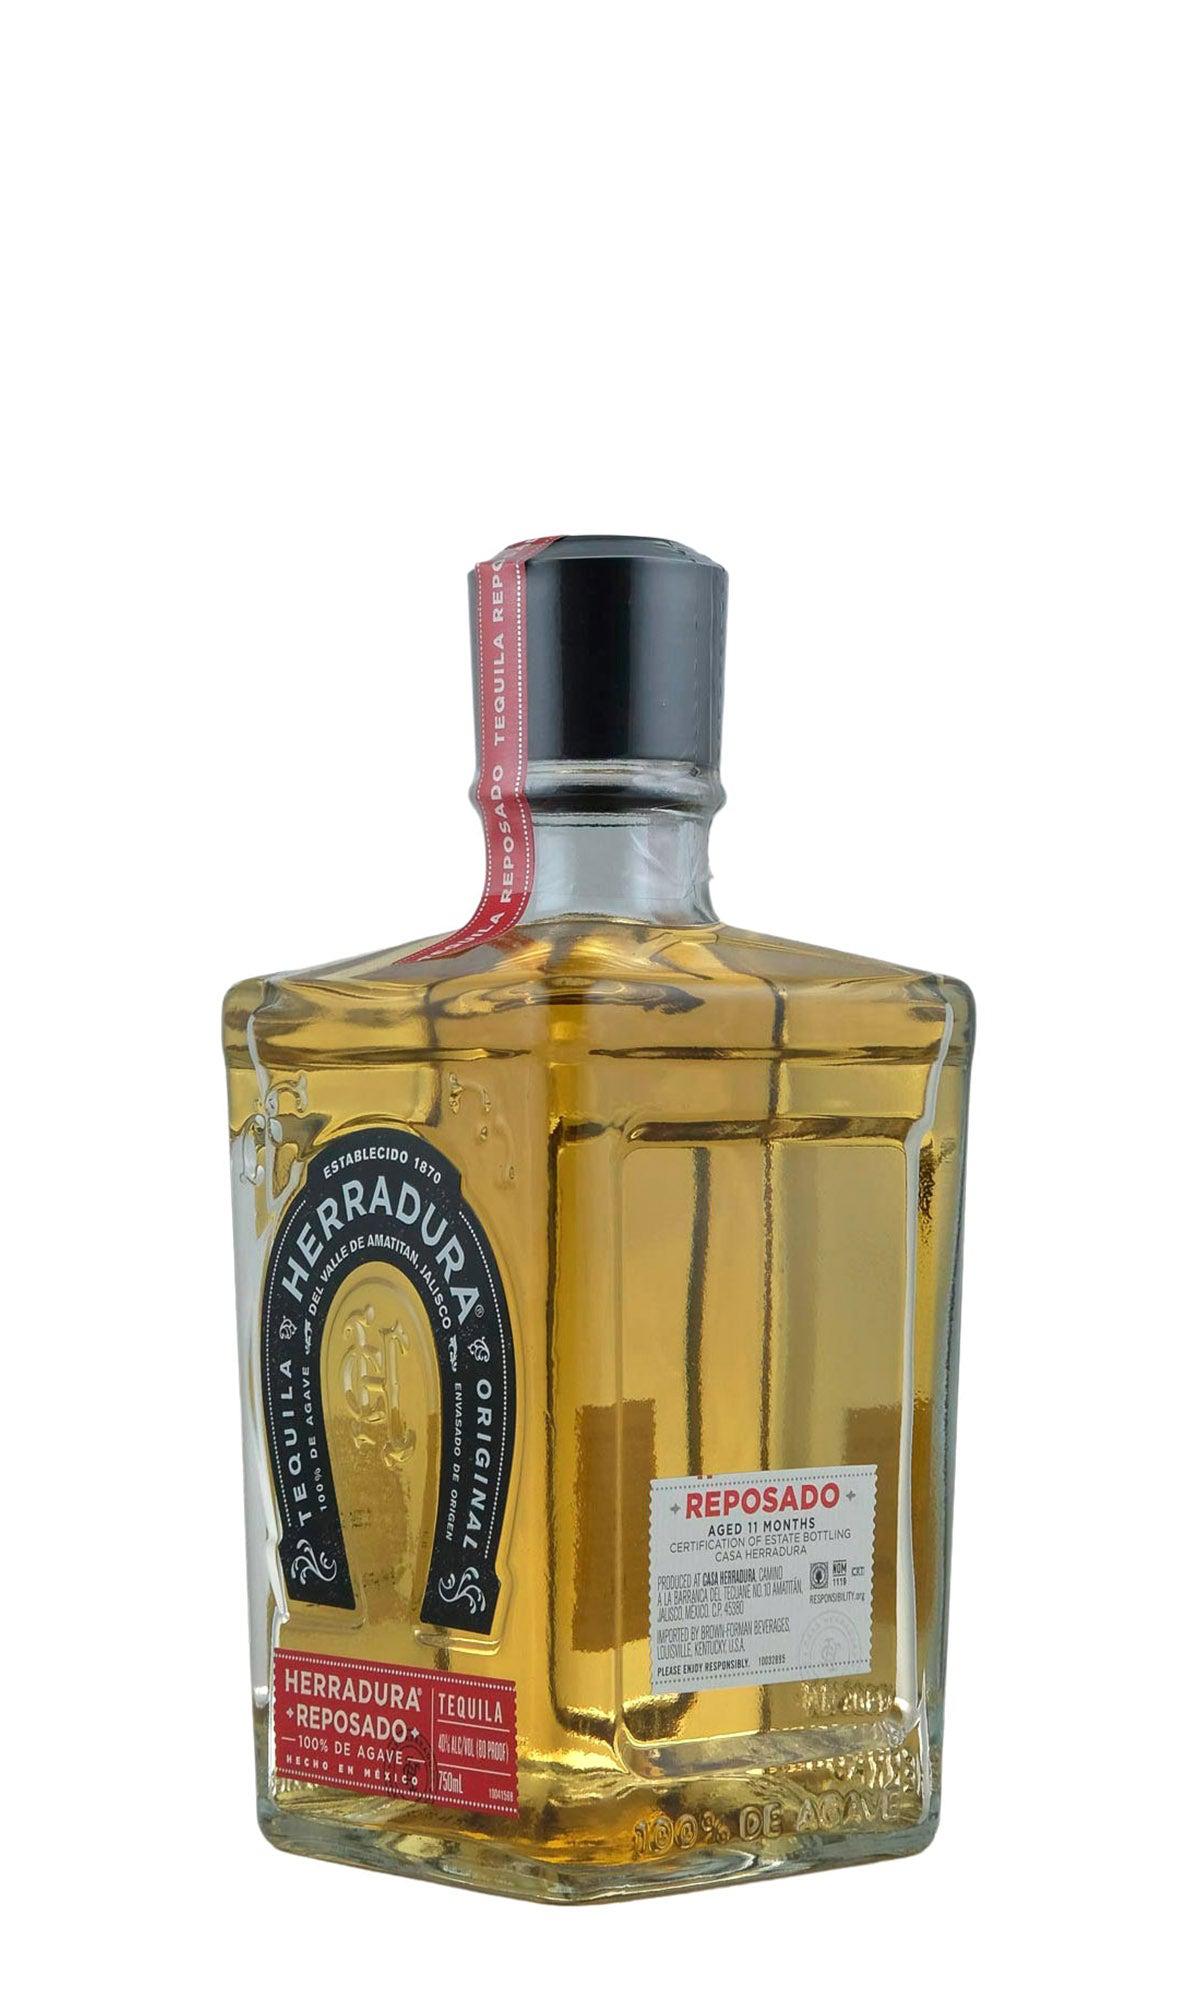 Savor El Tequileno Reposado: A Refined Mexican Tequila Gem